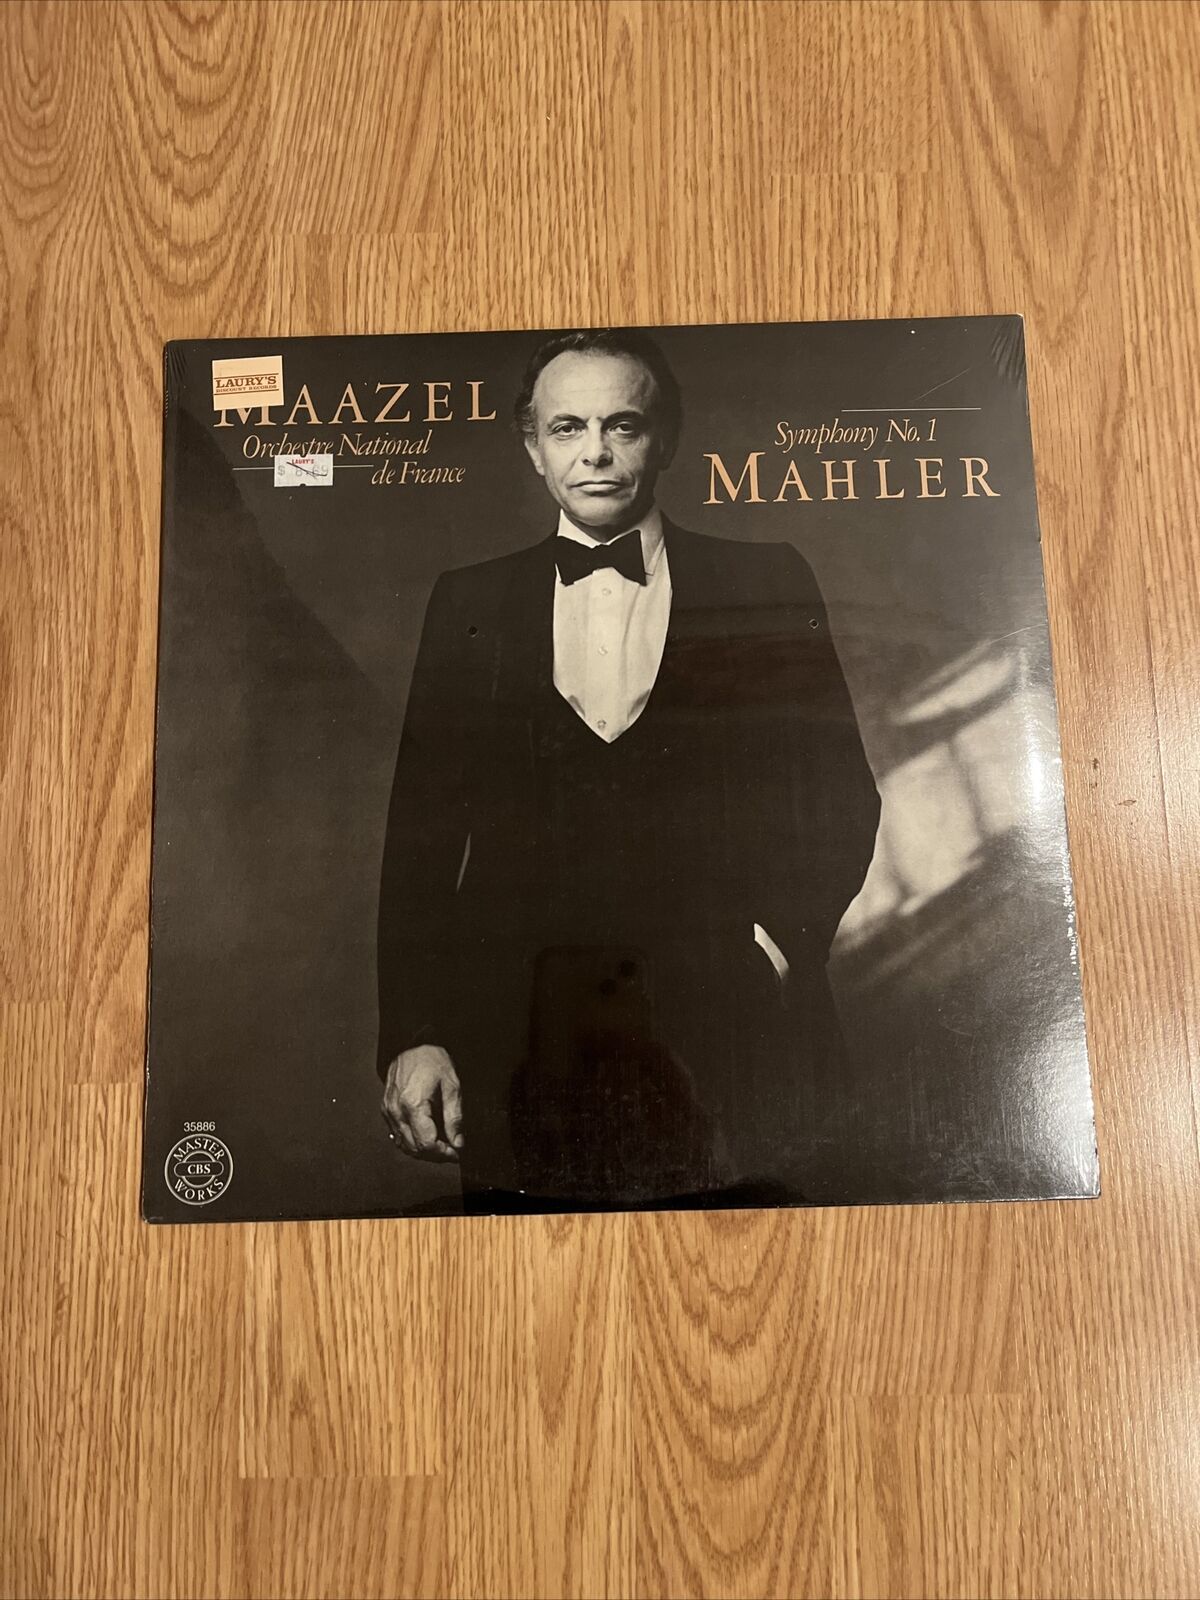 1982 LORIN MAAZEL Mahler Symphony No.1 LP CBS Masterworks New sealed